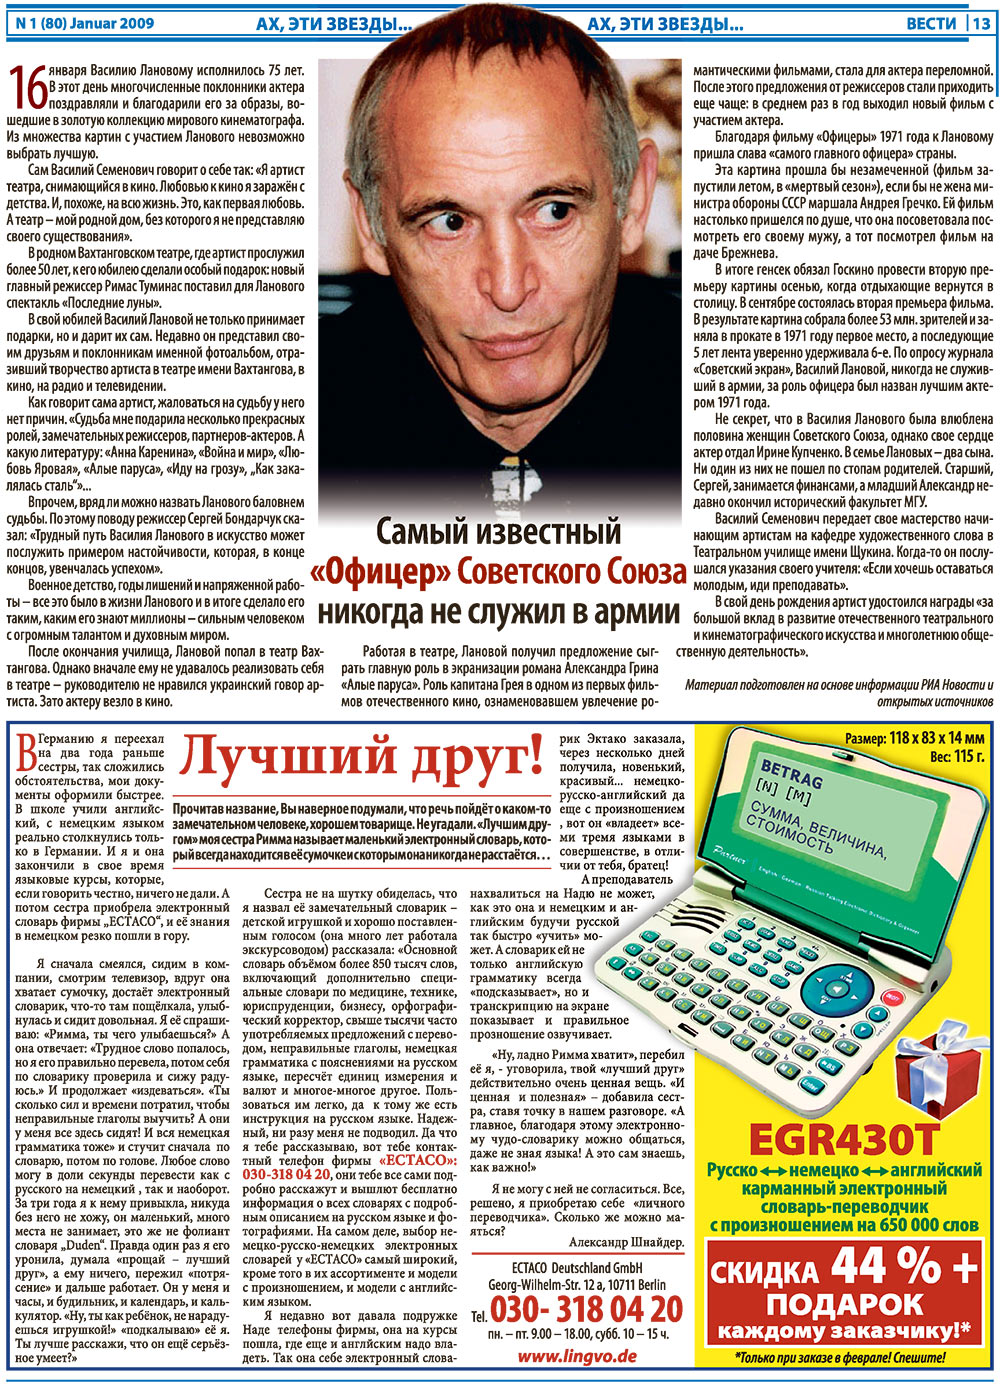 Вести, газета. 2009 №1 стр.13